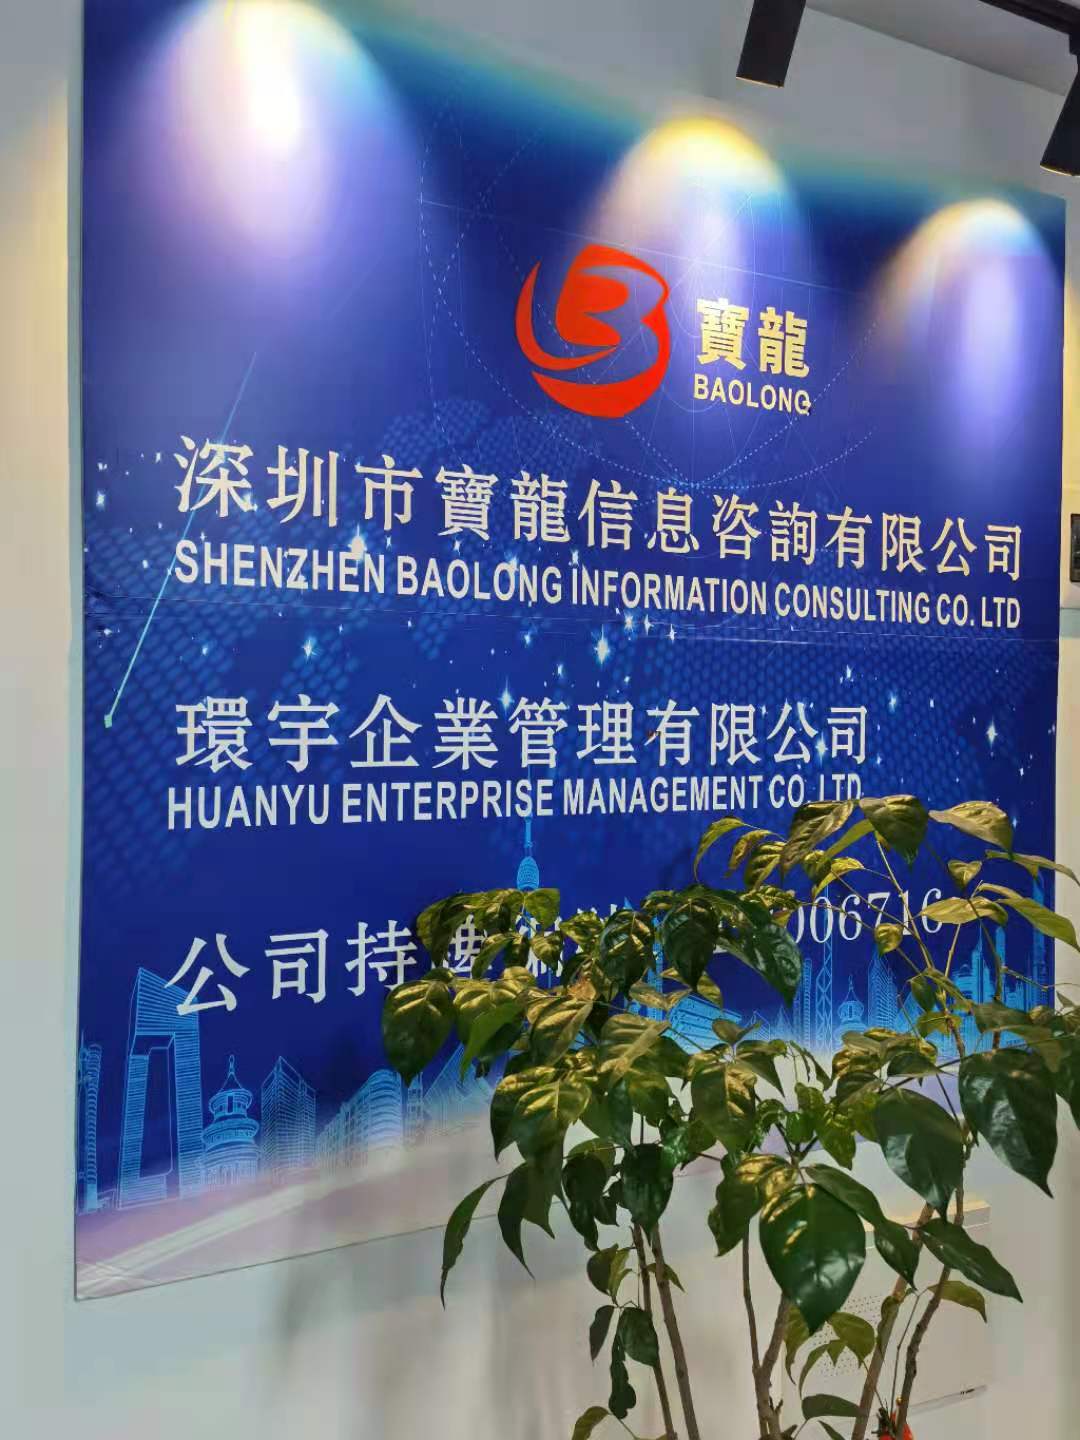 内地公司注册在中国香港 公开透明